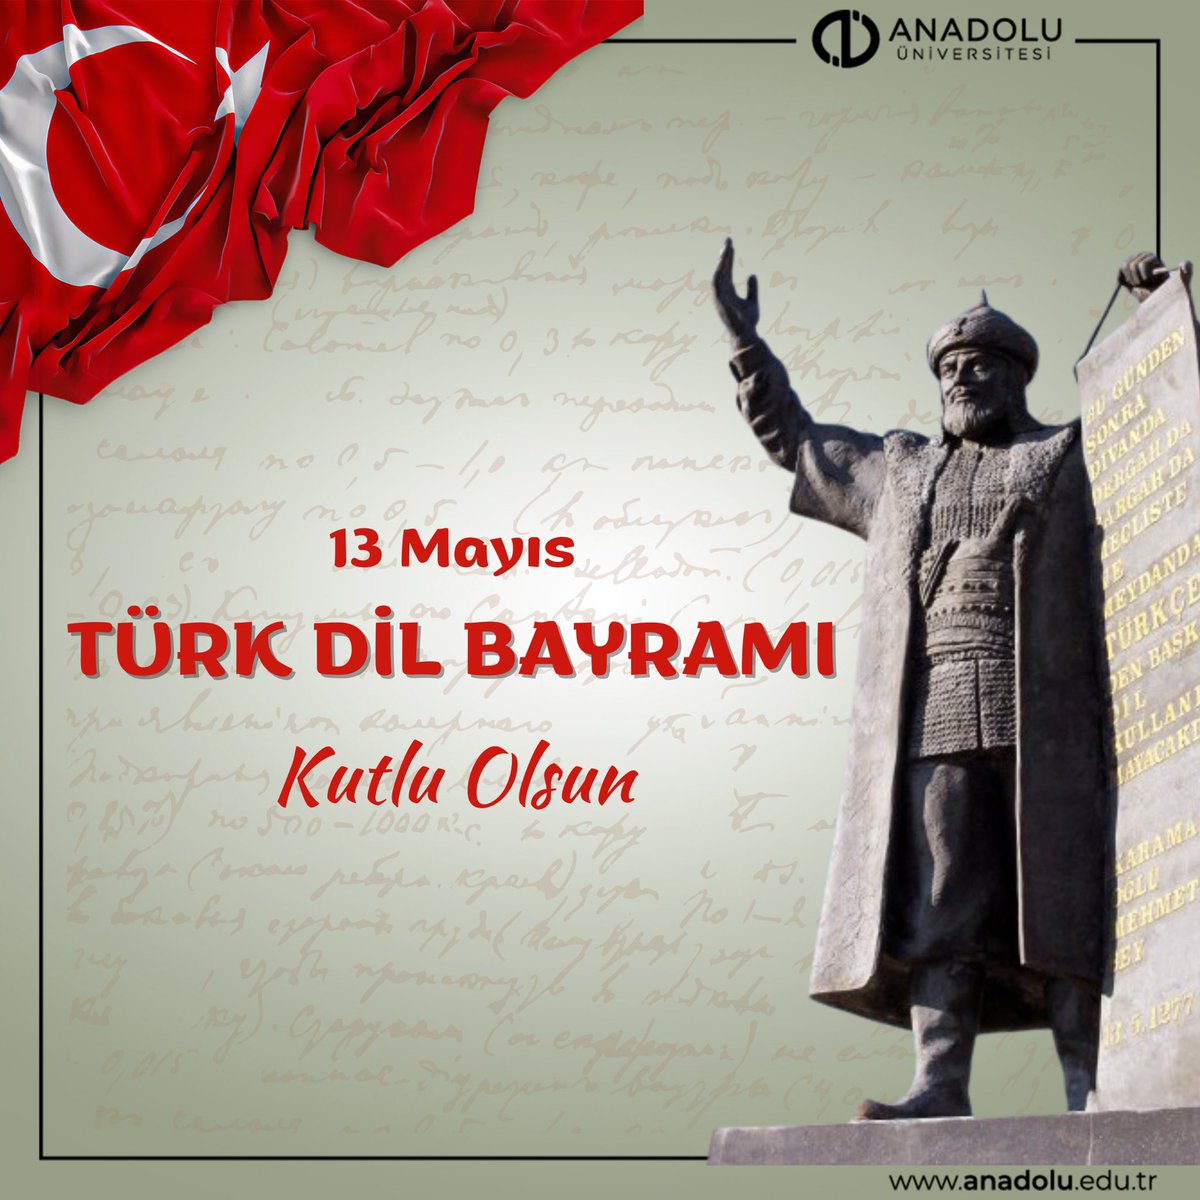 Türk Dil Bayramı Kutlu Olsun. #AnadoluÜniversitesi #TürkDilBayramı #13Mayıs